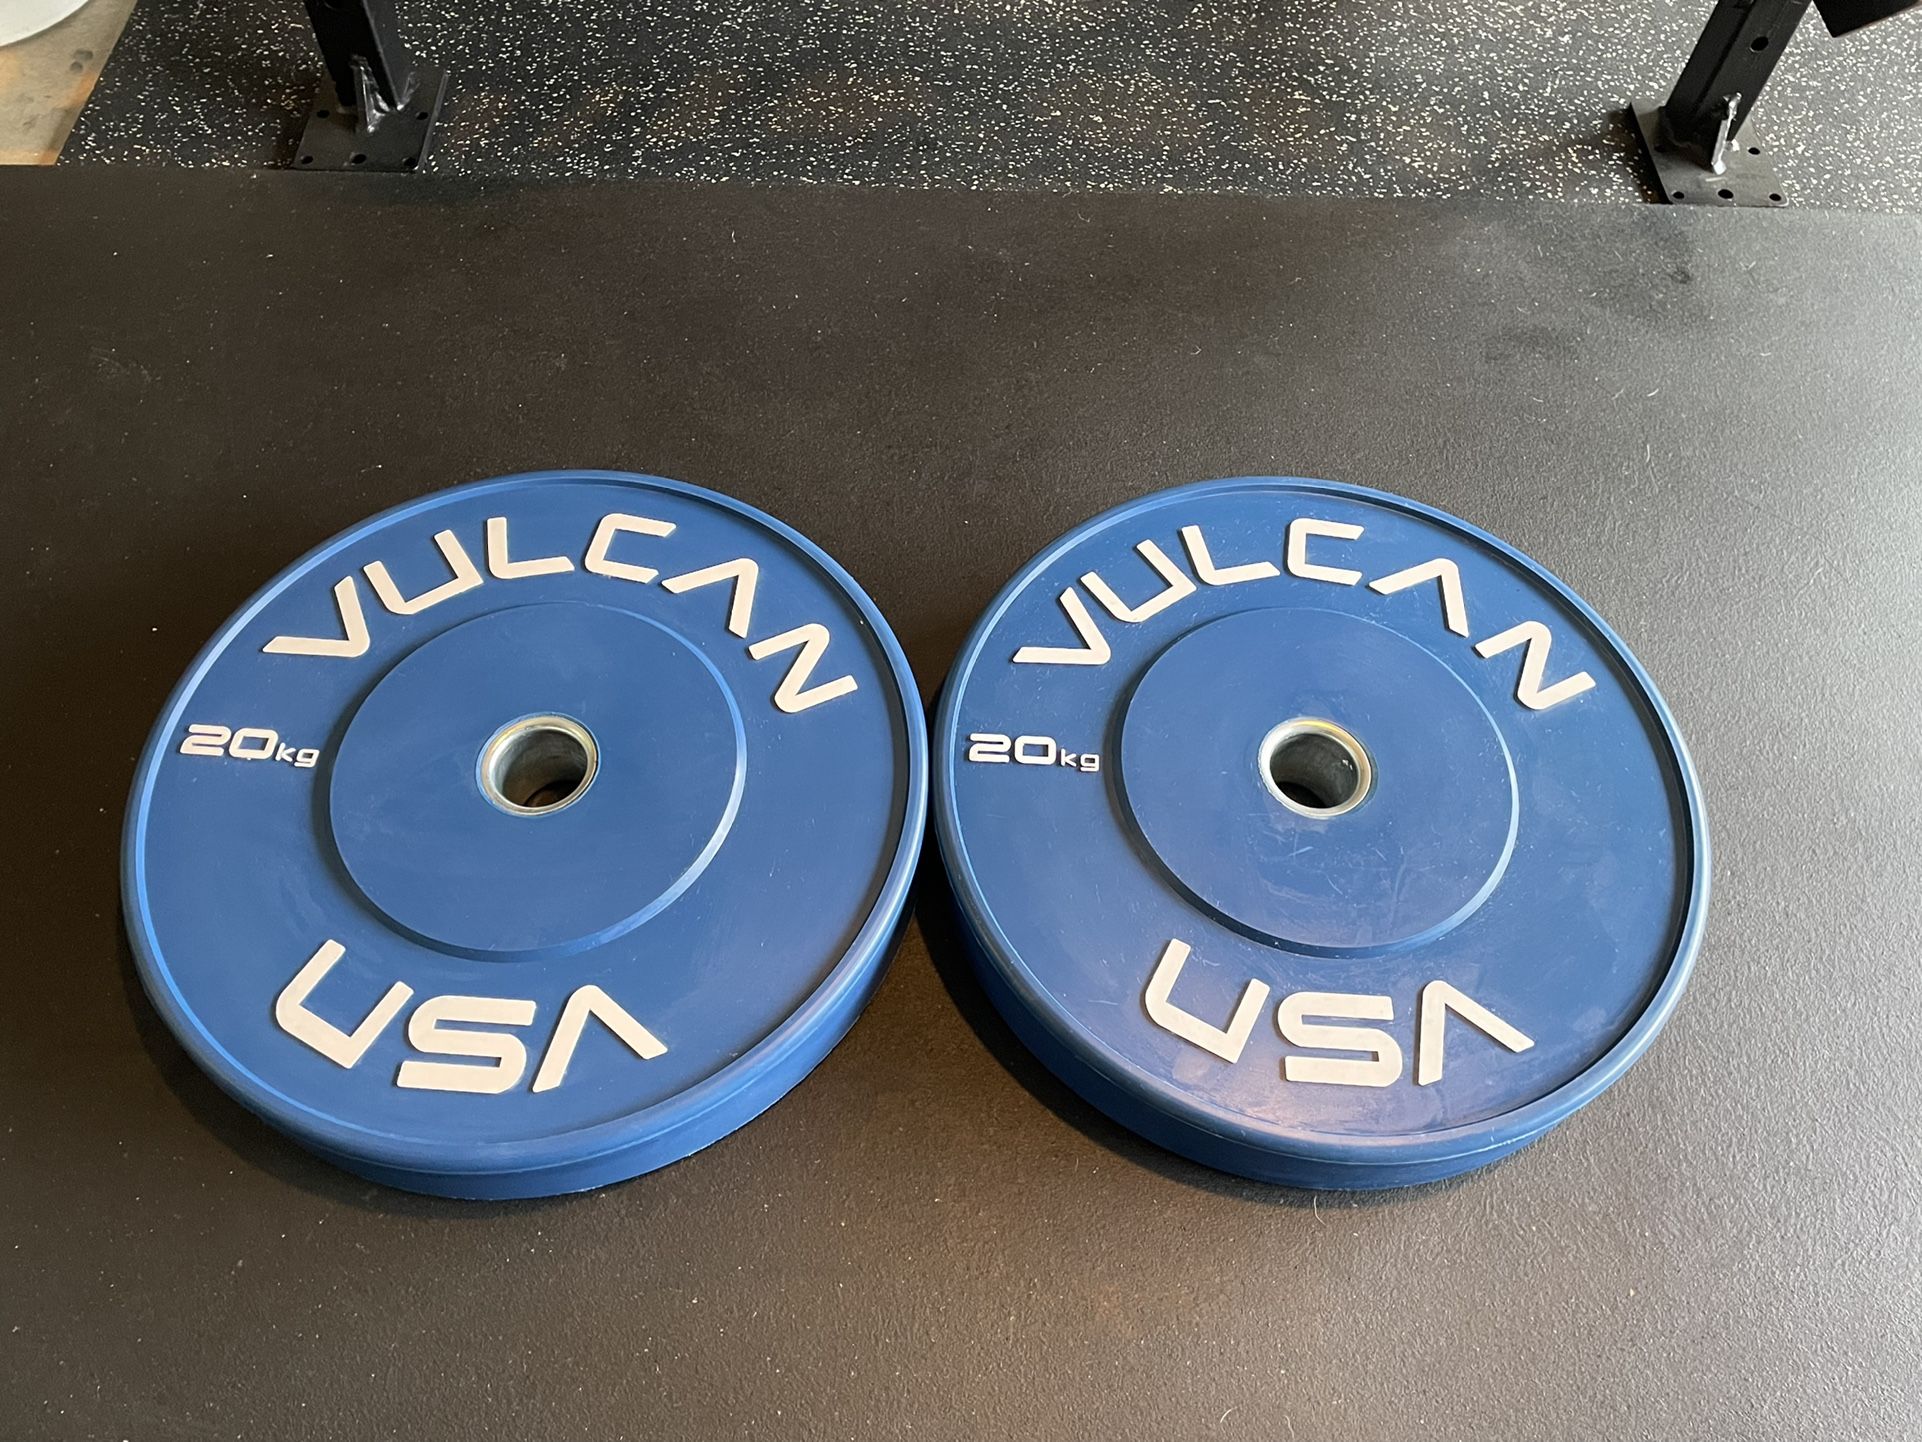 Vulcan Bumper Plates - 20 Kg Pair